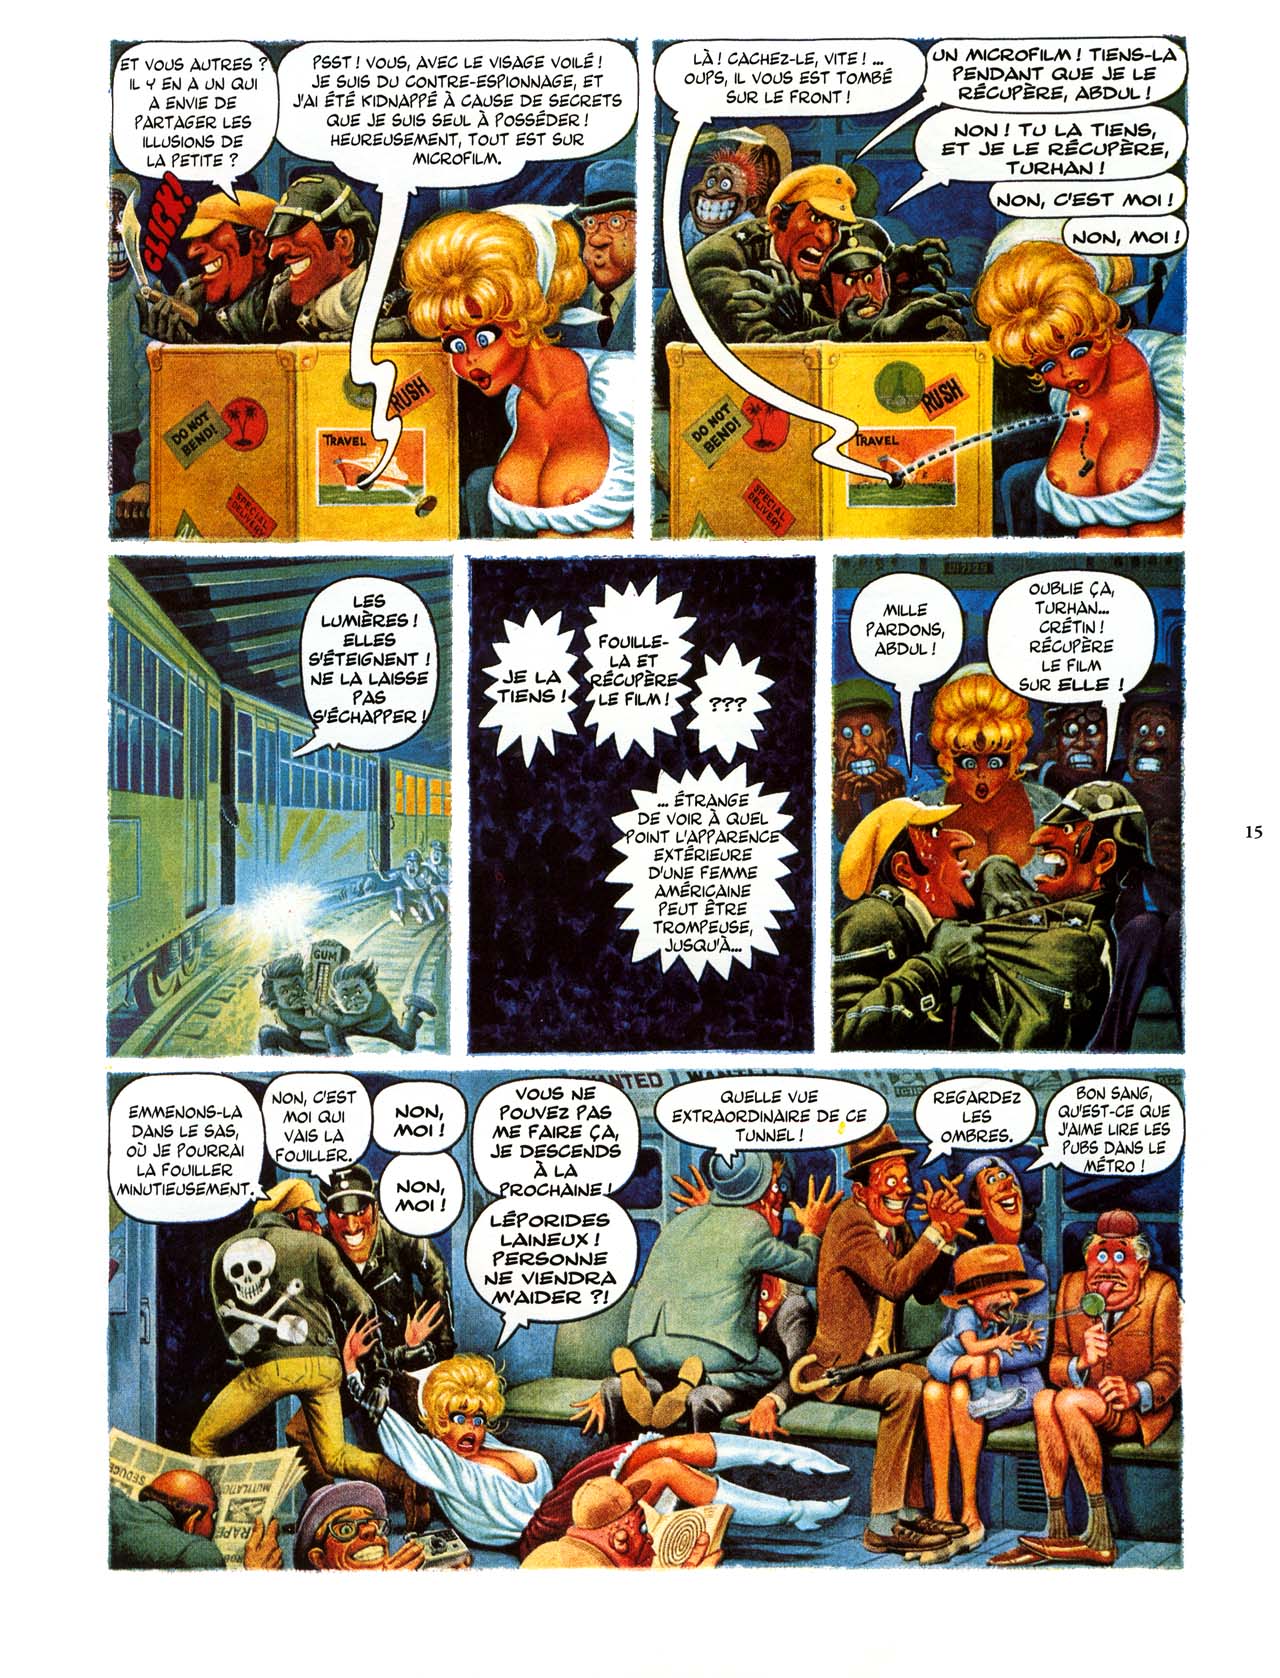 Playboys Little Annie Fanny Vol. 2 - 1965-1970 numero d'image 15